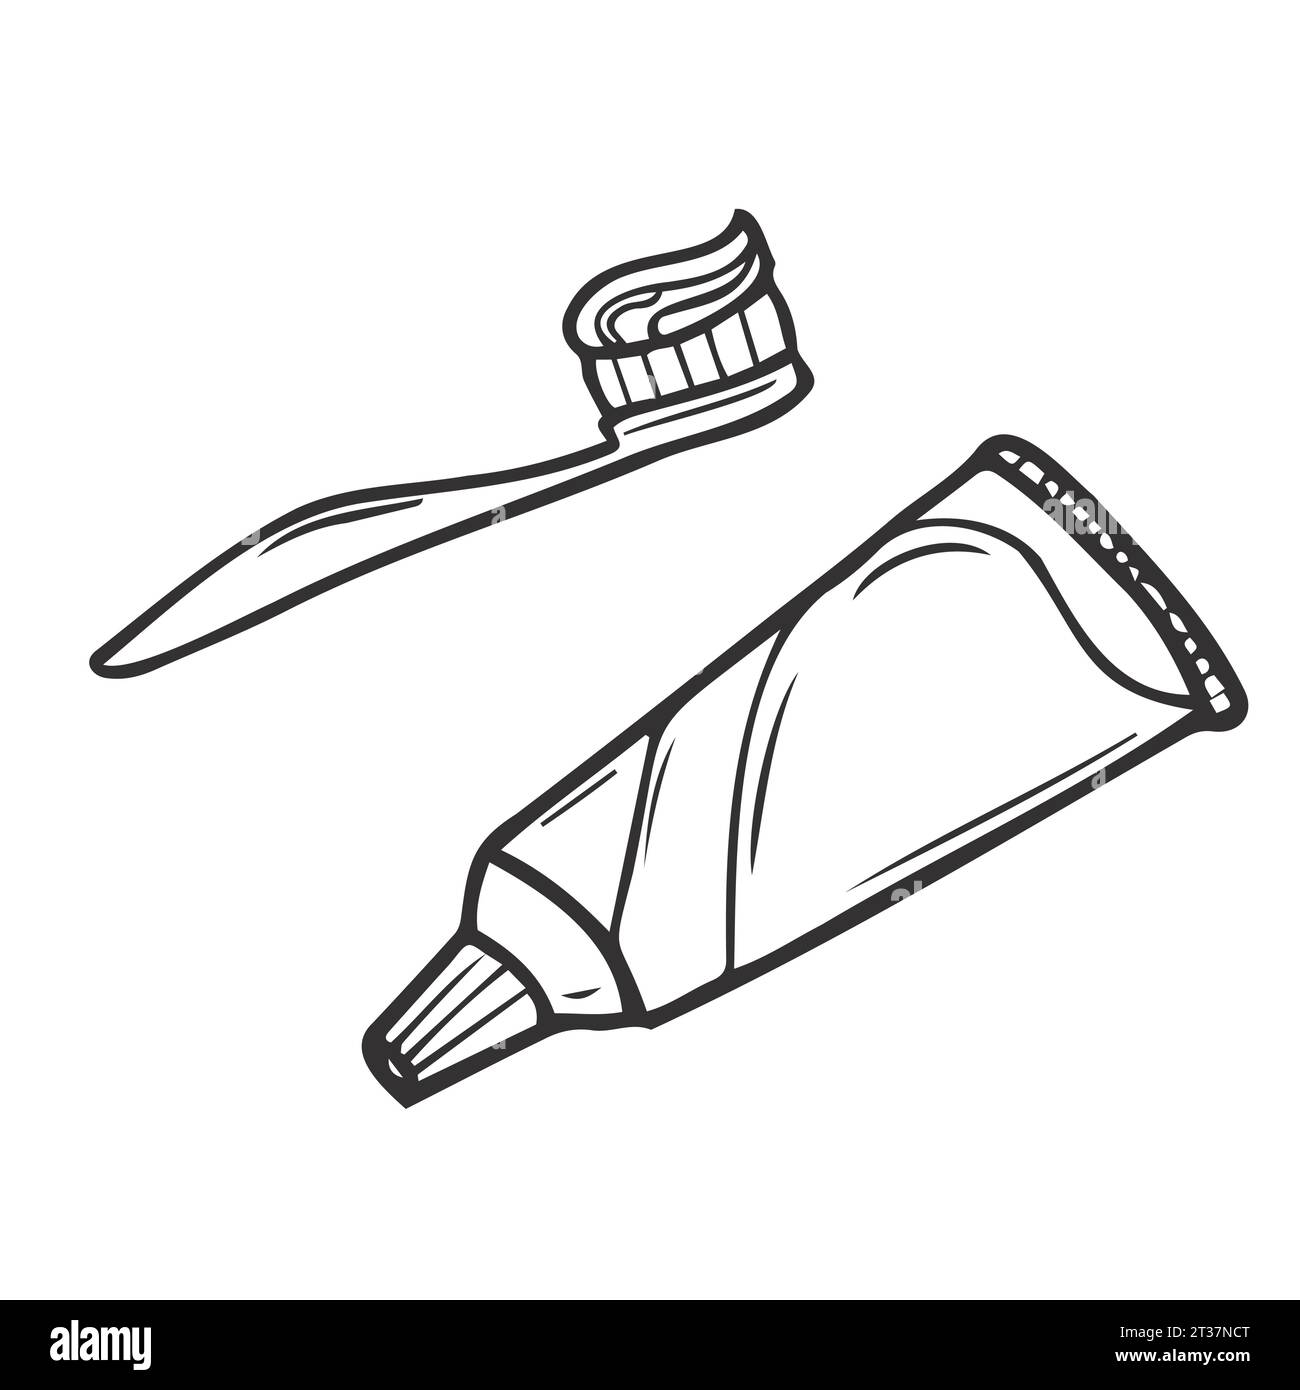 Kit de nettoyage des dents. Instruments pour l'hygiène buccale. Illustration dessinée à la main convertie en vecteurs. illustration de dessin vectoriel de brosse à dents et de dentifrice Illustration de Vecteur